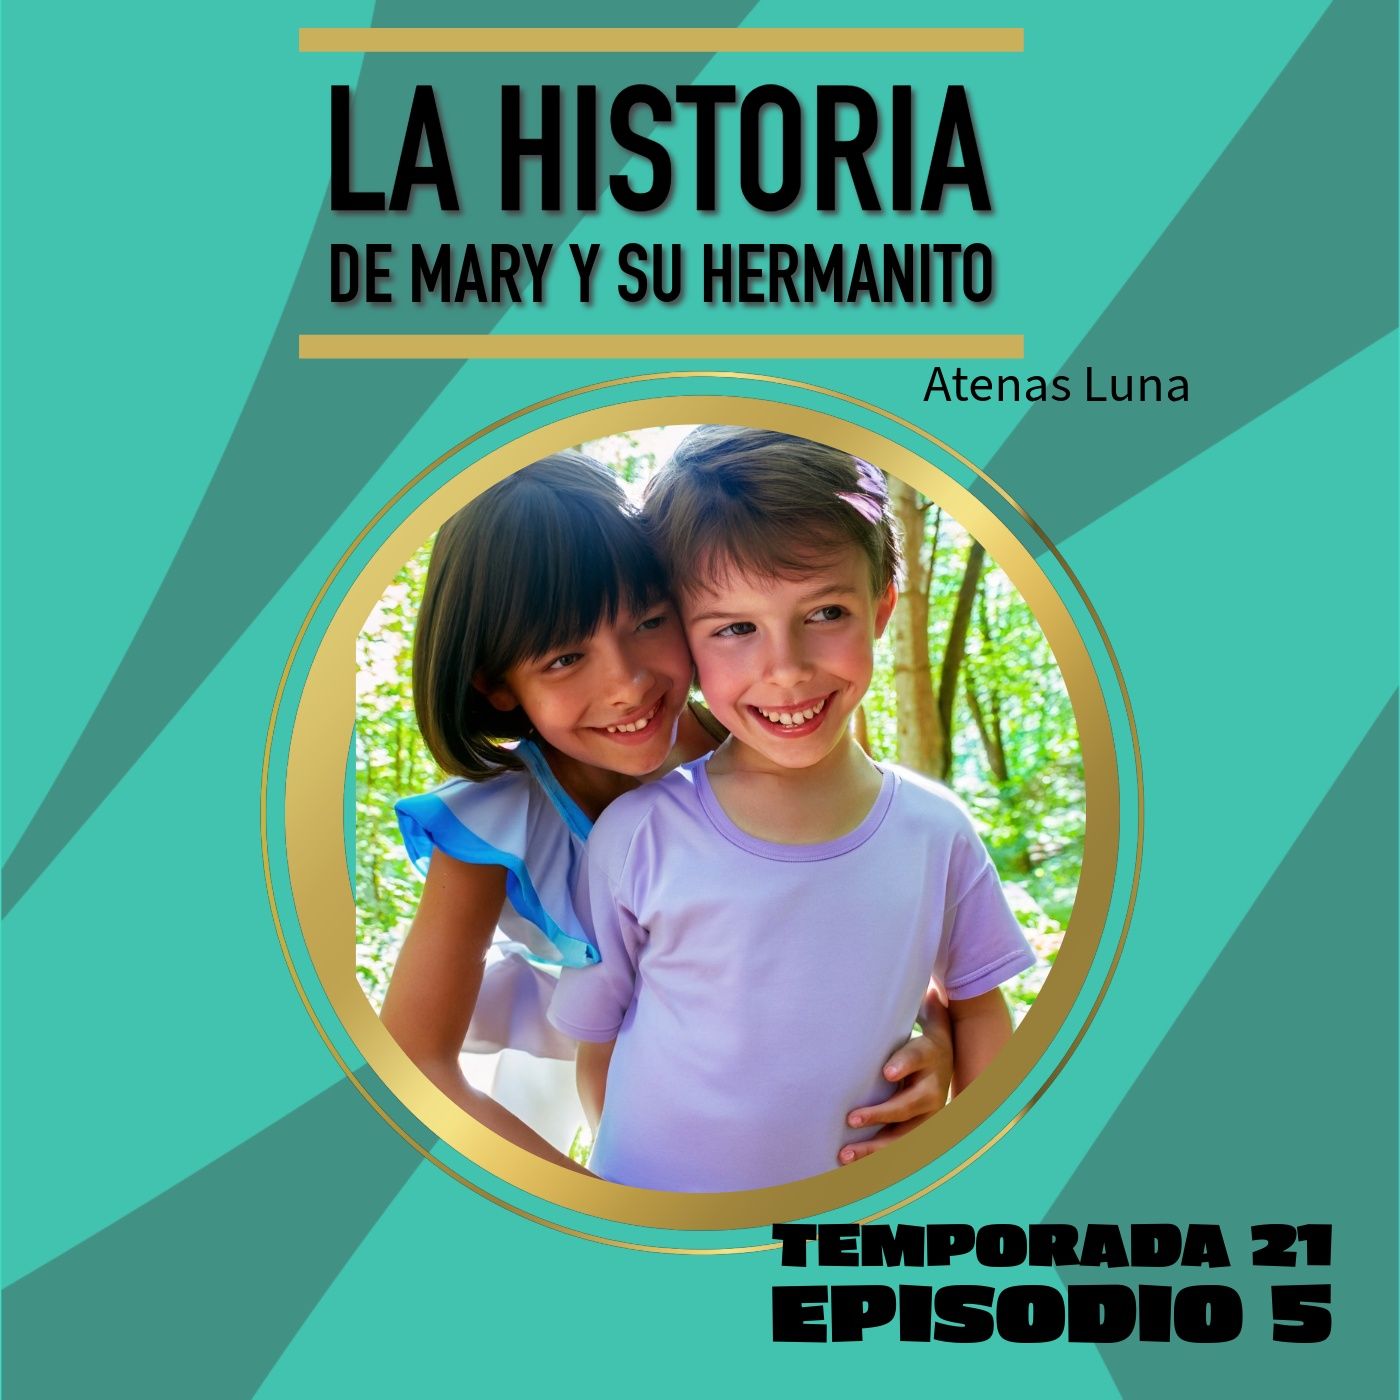 Cuento infantil: La historia de Mary y su hermanito - Temporada 21 Episodio 5